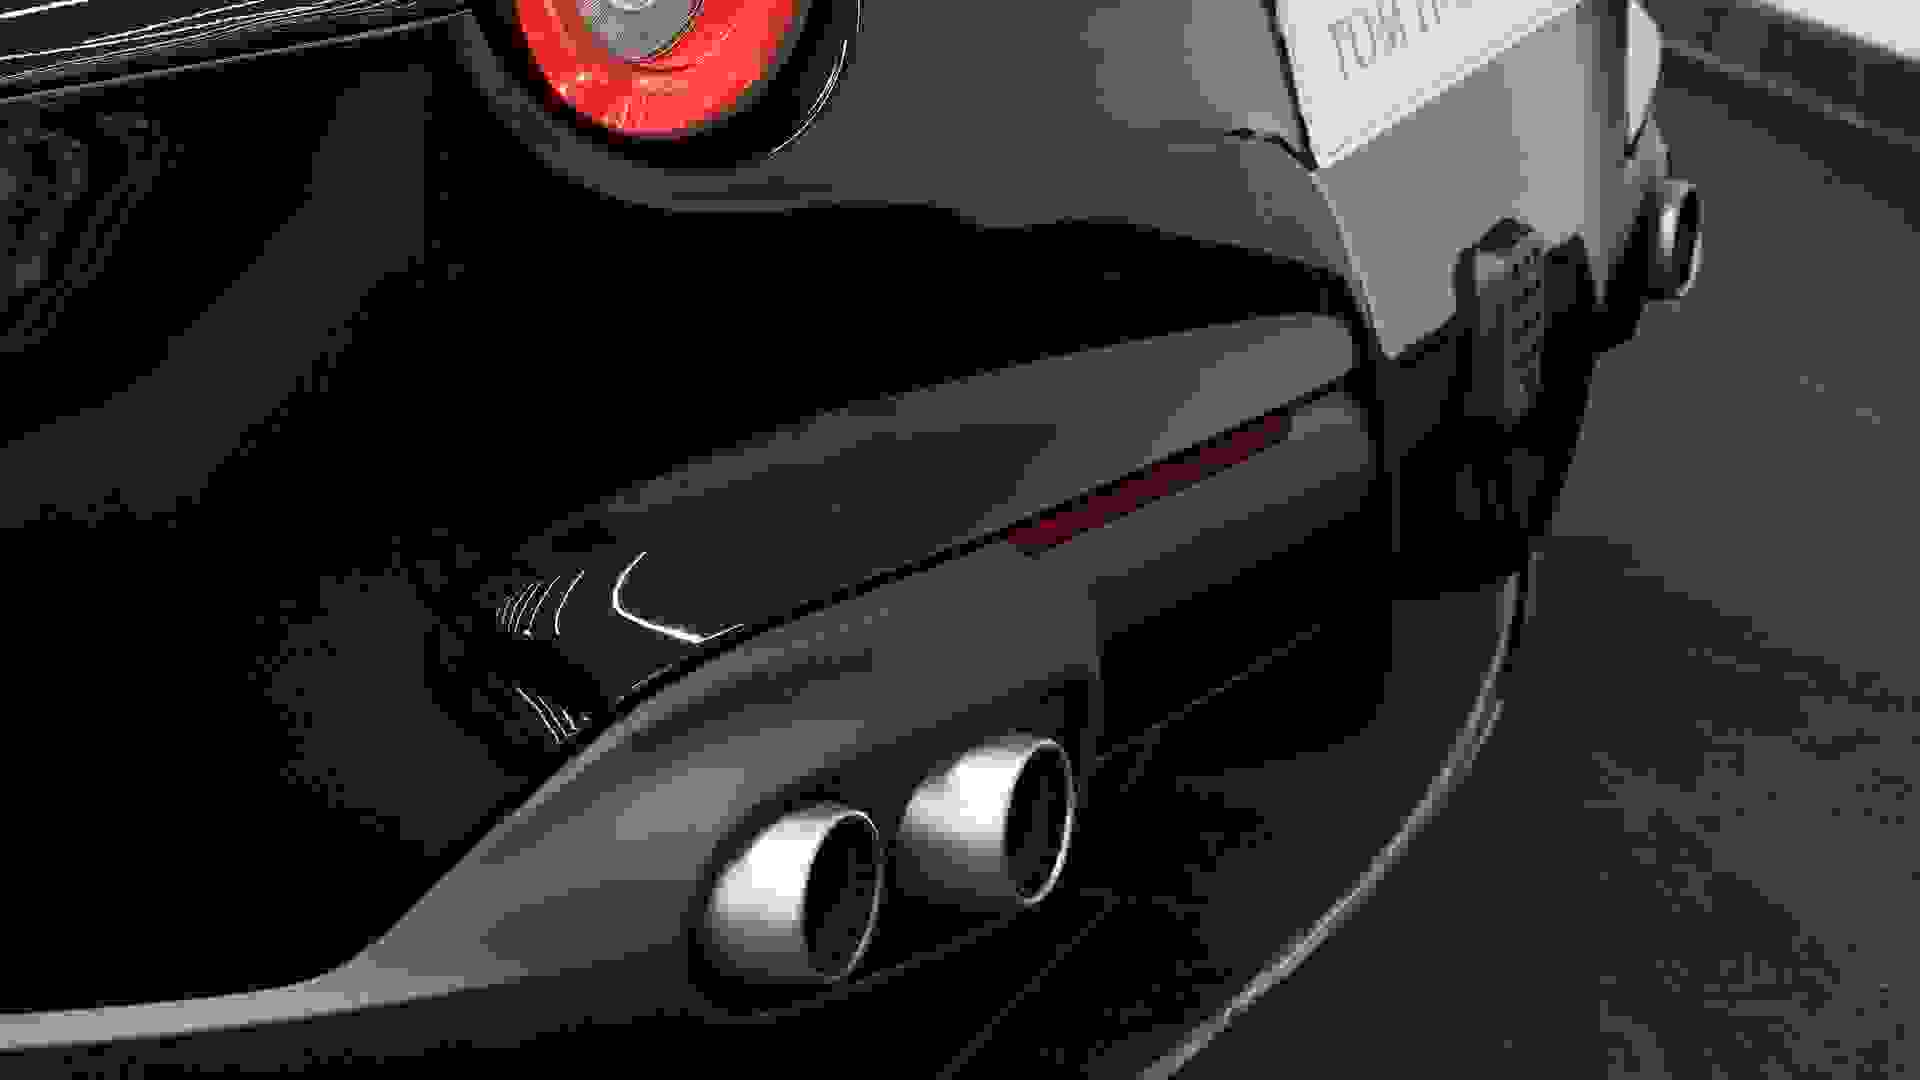 Ferrari F12 Photo 0543ac3d-6ad0-4756-a606-f57d8f2b73d4.jpg